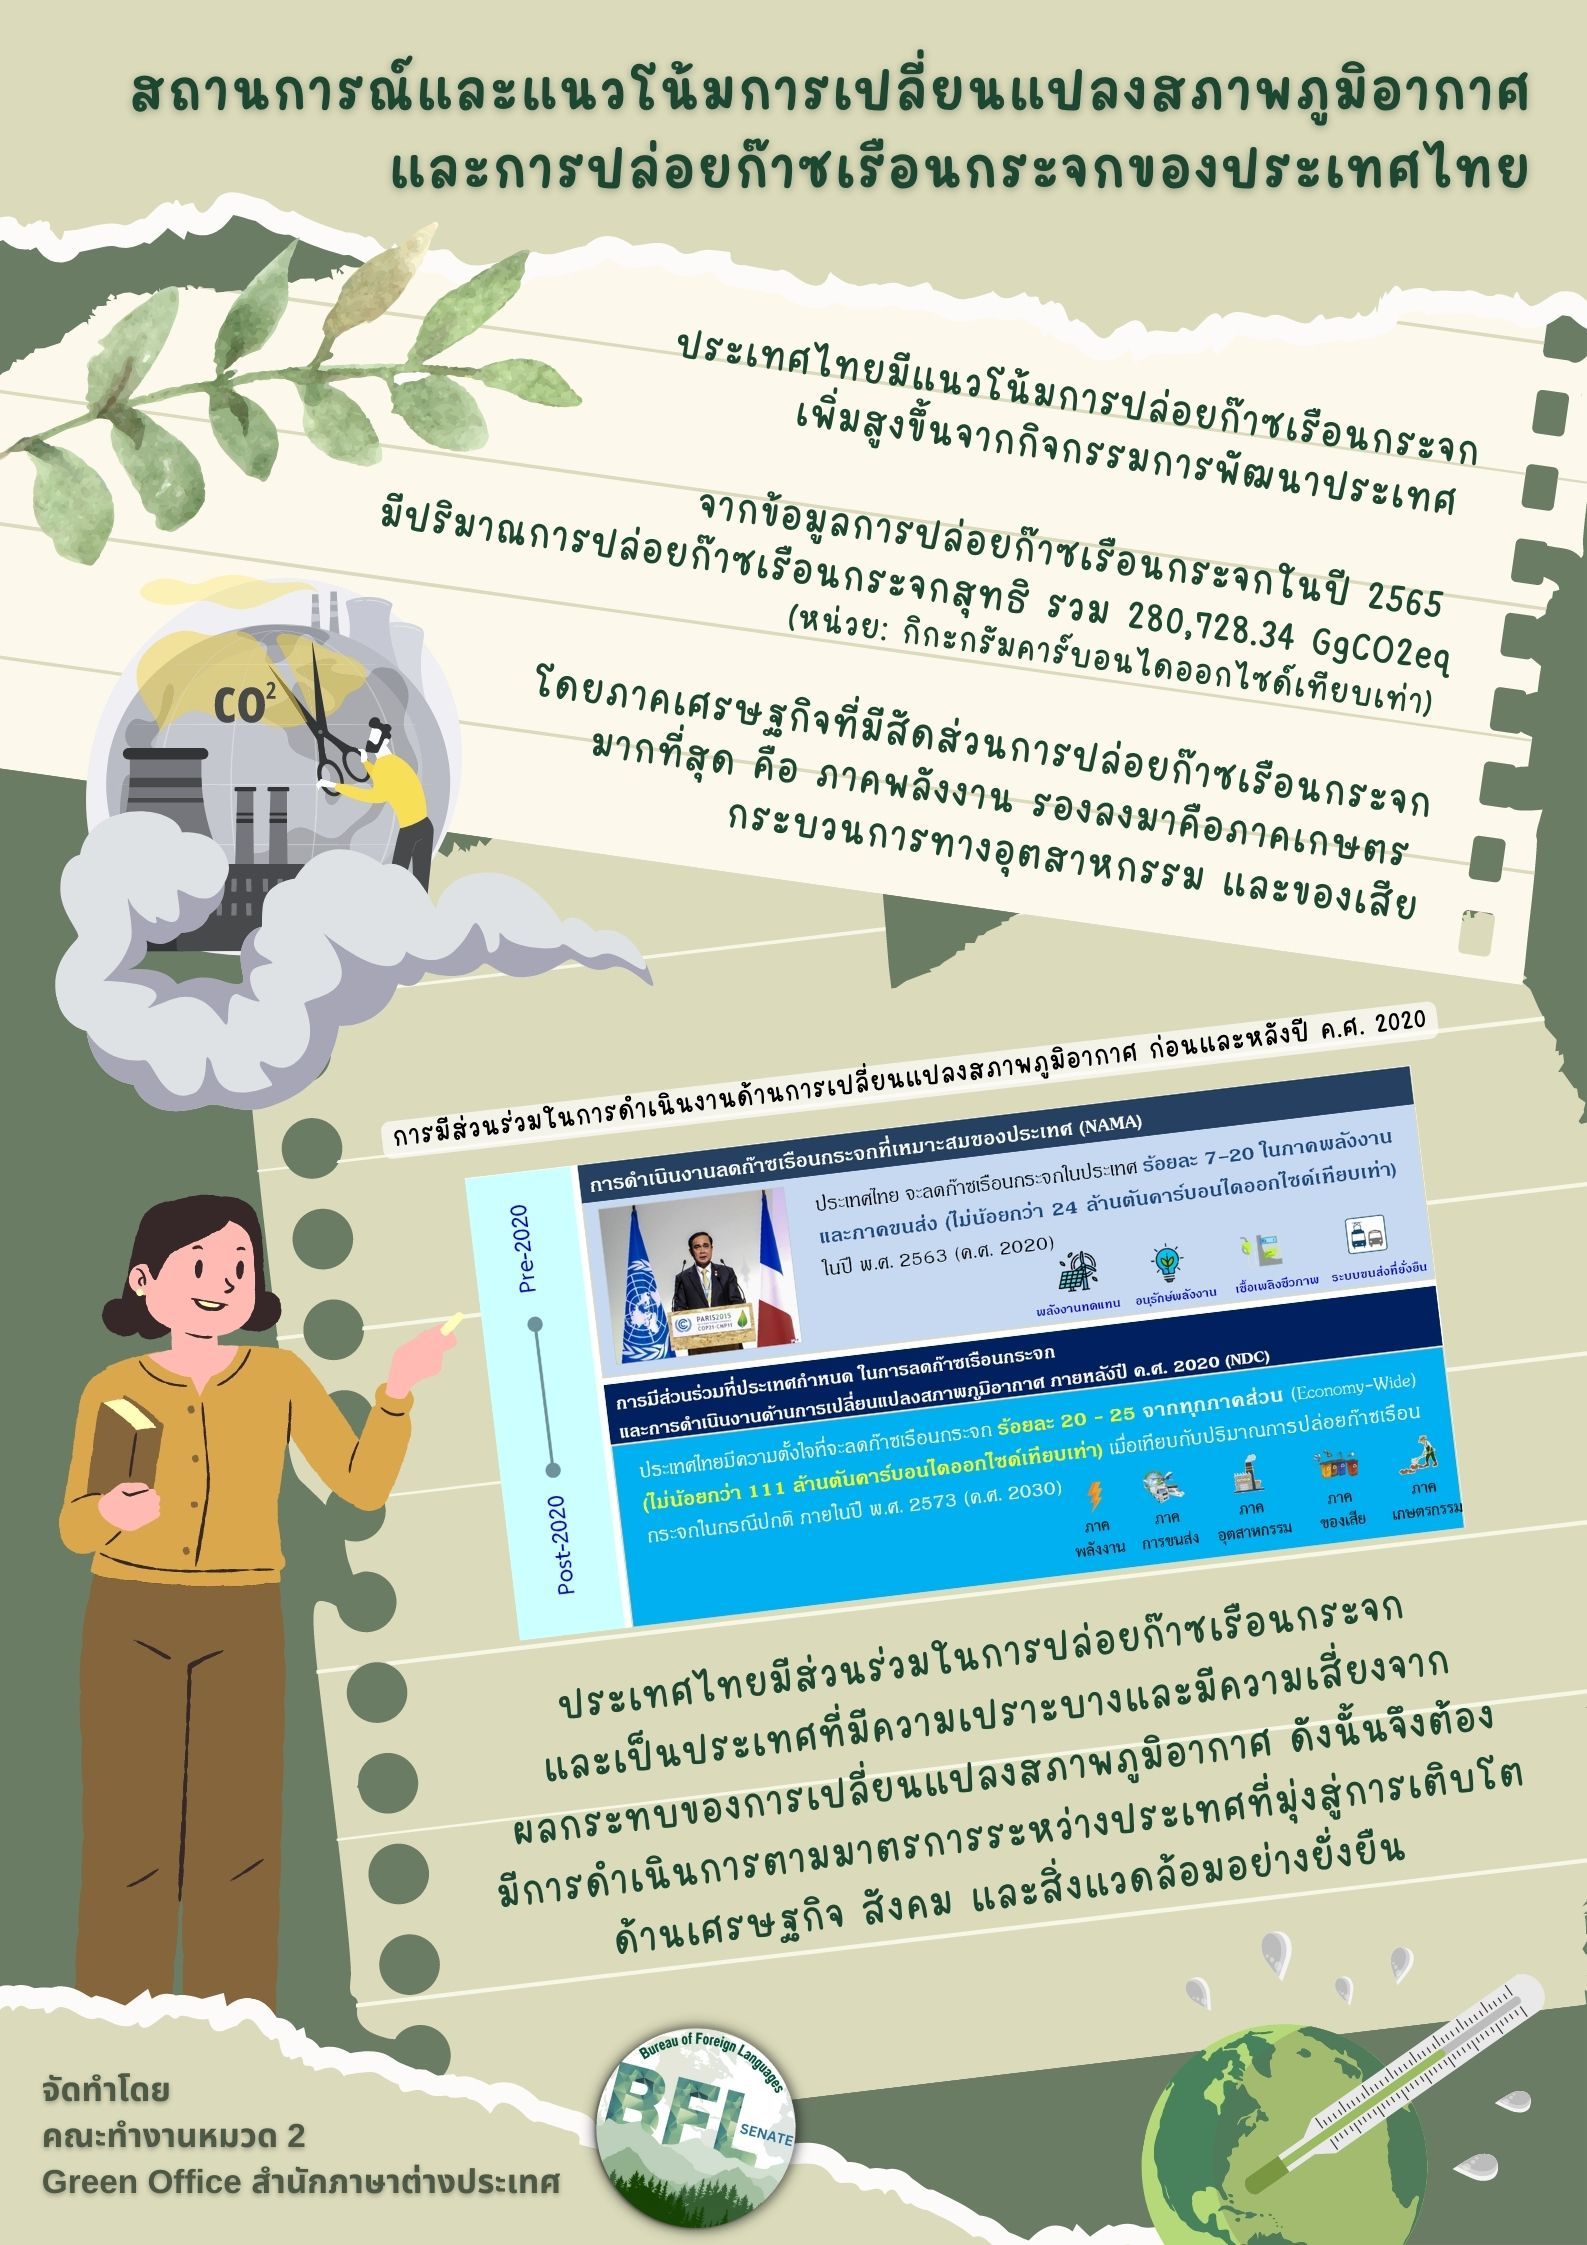 คณะทำงานหมวด 2 การสื่อสารและสร้างจิตสำนึก สำนักภาษาต่างประเทศ ขอประชาสัมพันธ์ความรู้เรื่องสถานการณ์ แนวโน้มการเปลี่ยนแปลงสภาพภูมิอากาศและการปล่อยก๊าซเรือนกระจกของประเทศไทย